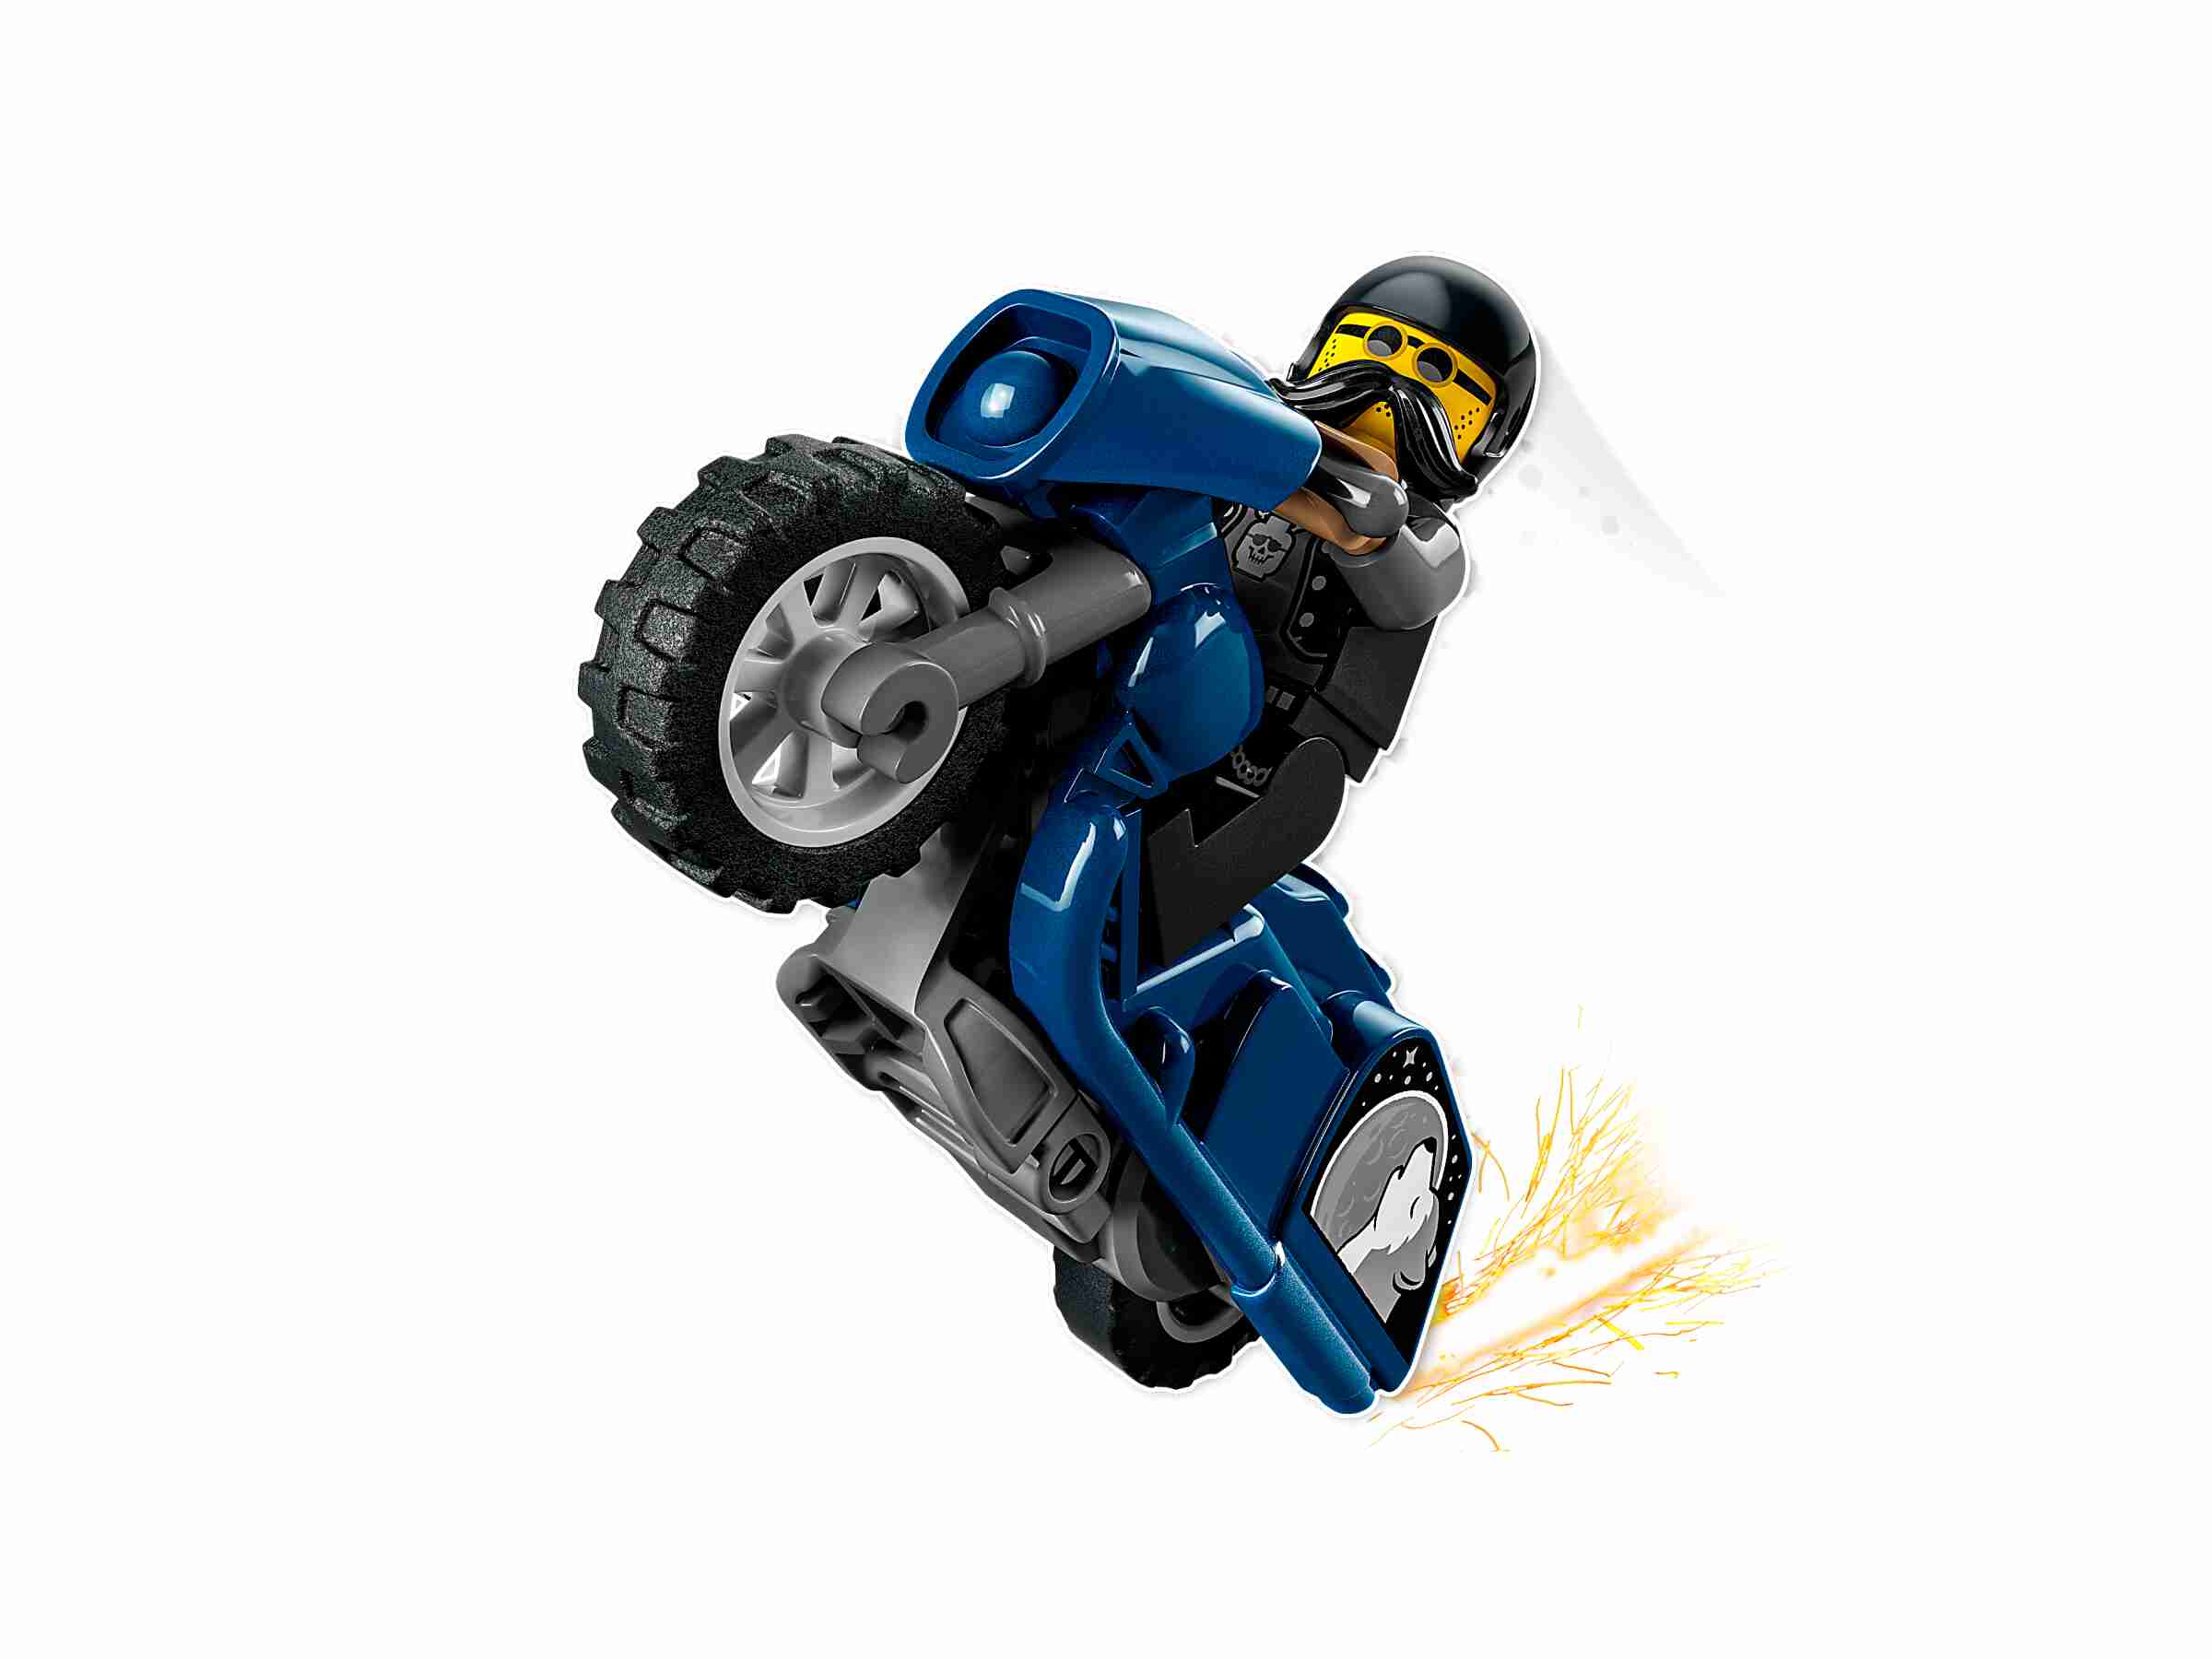 LEGO 60331 City Stuntz Cruiser-Stuntbike, Set mit Motorrad und Minifigur